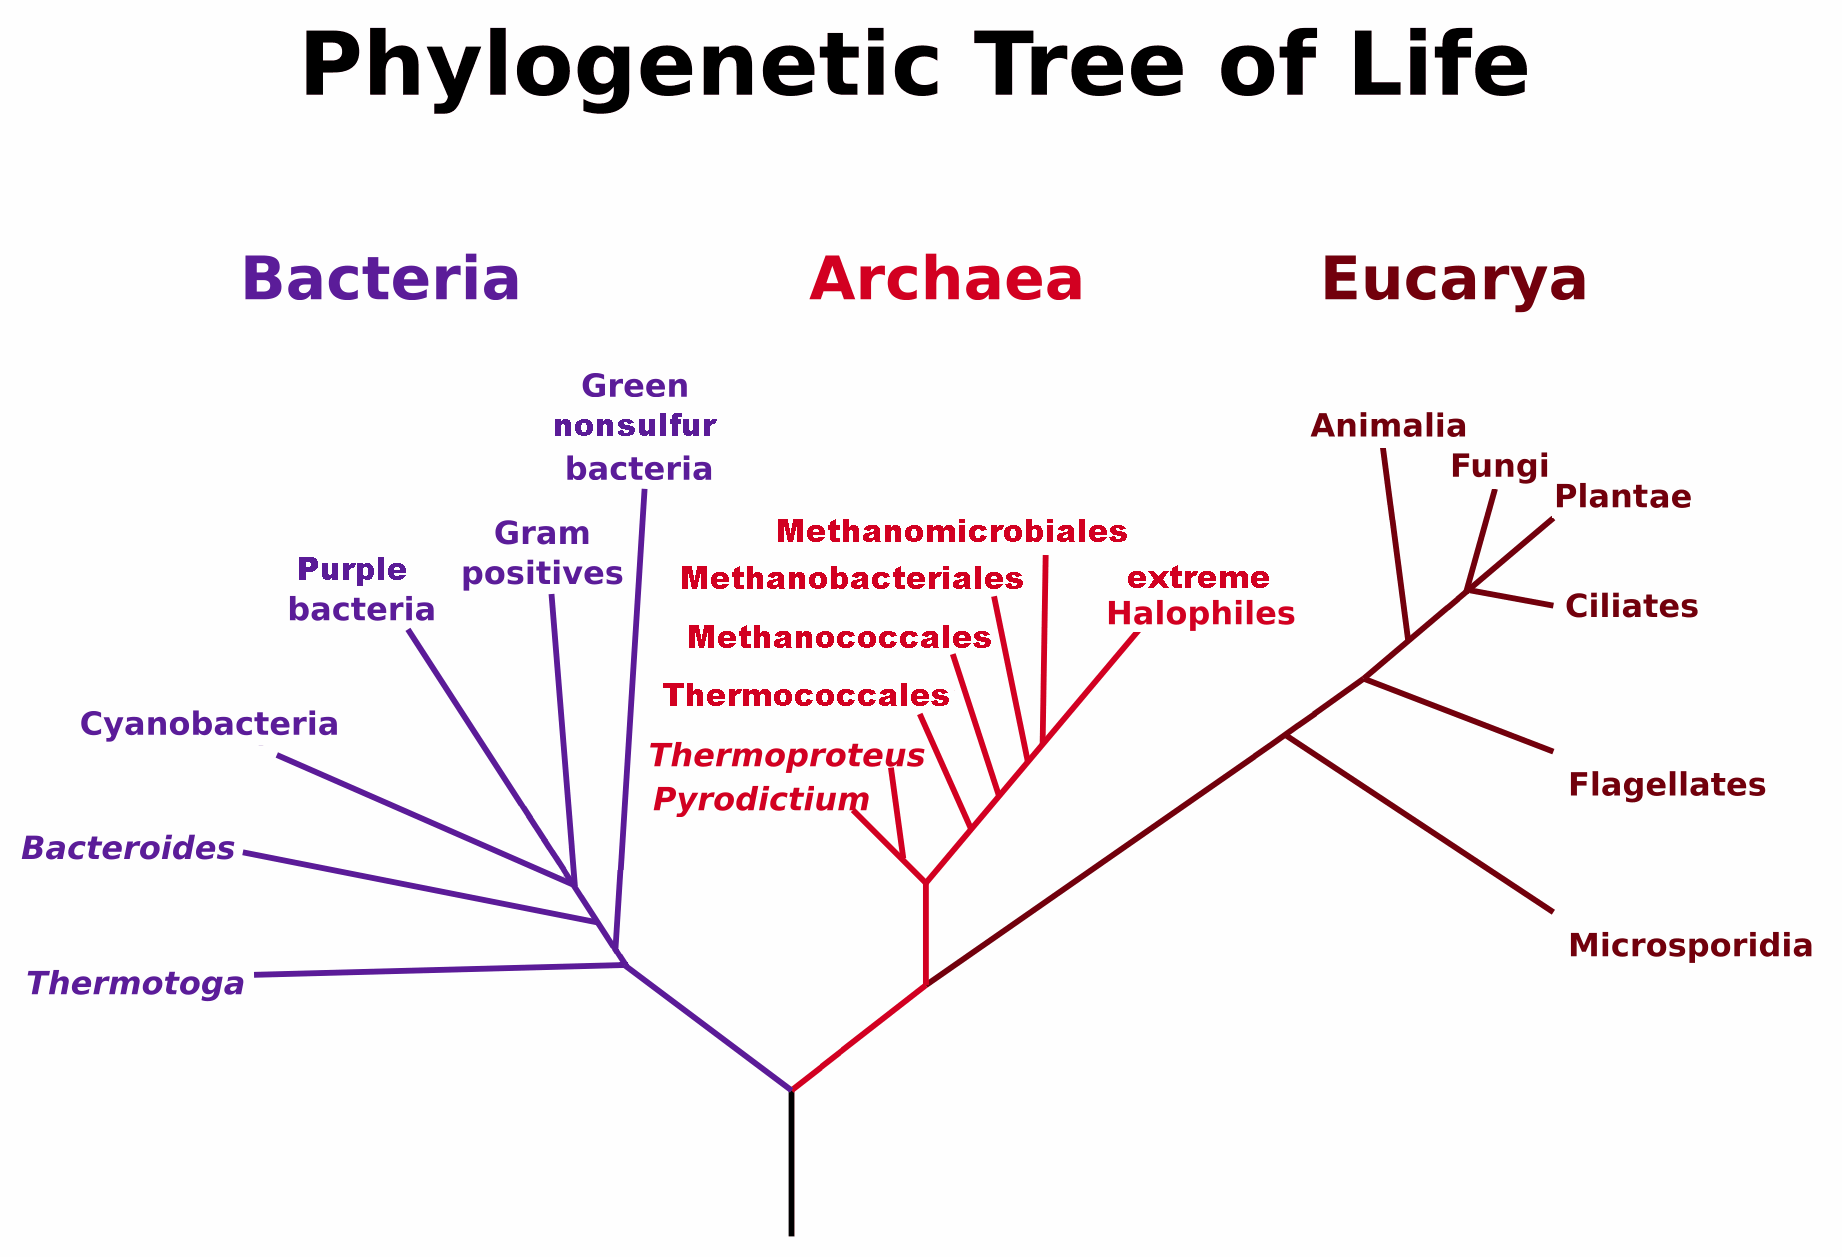 Árbol filogenético de los 3 dominios biológicos, Bacteria, Archaea y Eukarya. Con una barra vertical se representa la existencia de LUCA, el último ancestro común, desconocido. (Por Maulucioni - Trabajo Propio, CC BY-SA 3.0, https://commons.wikimedia.org/w/index.php?curid=24740337).